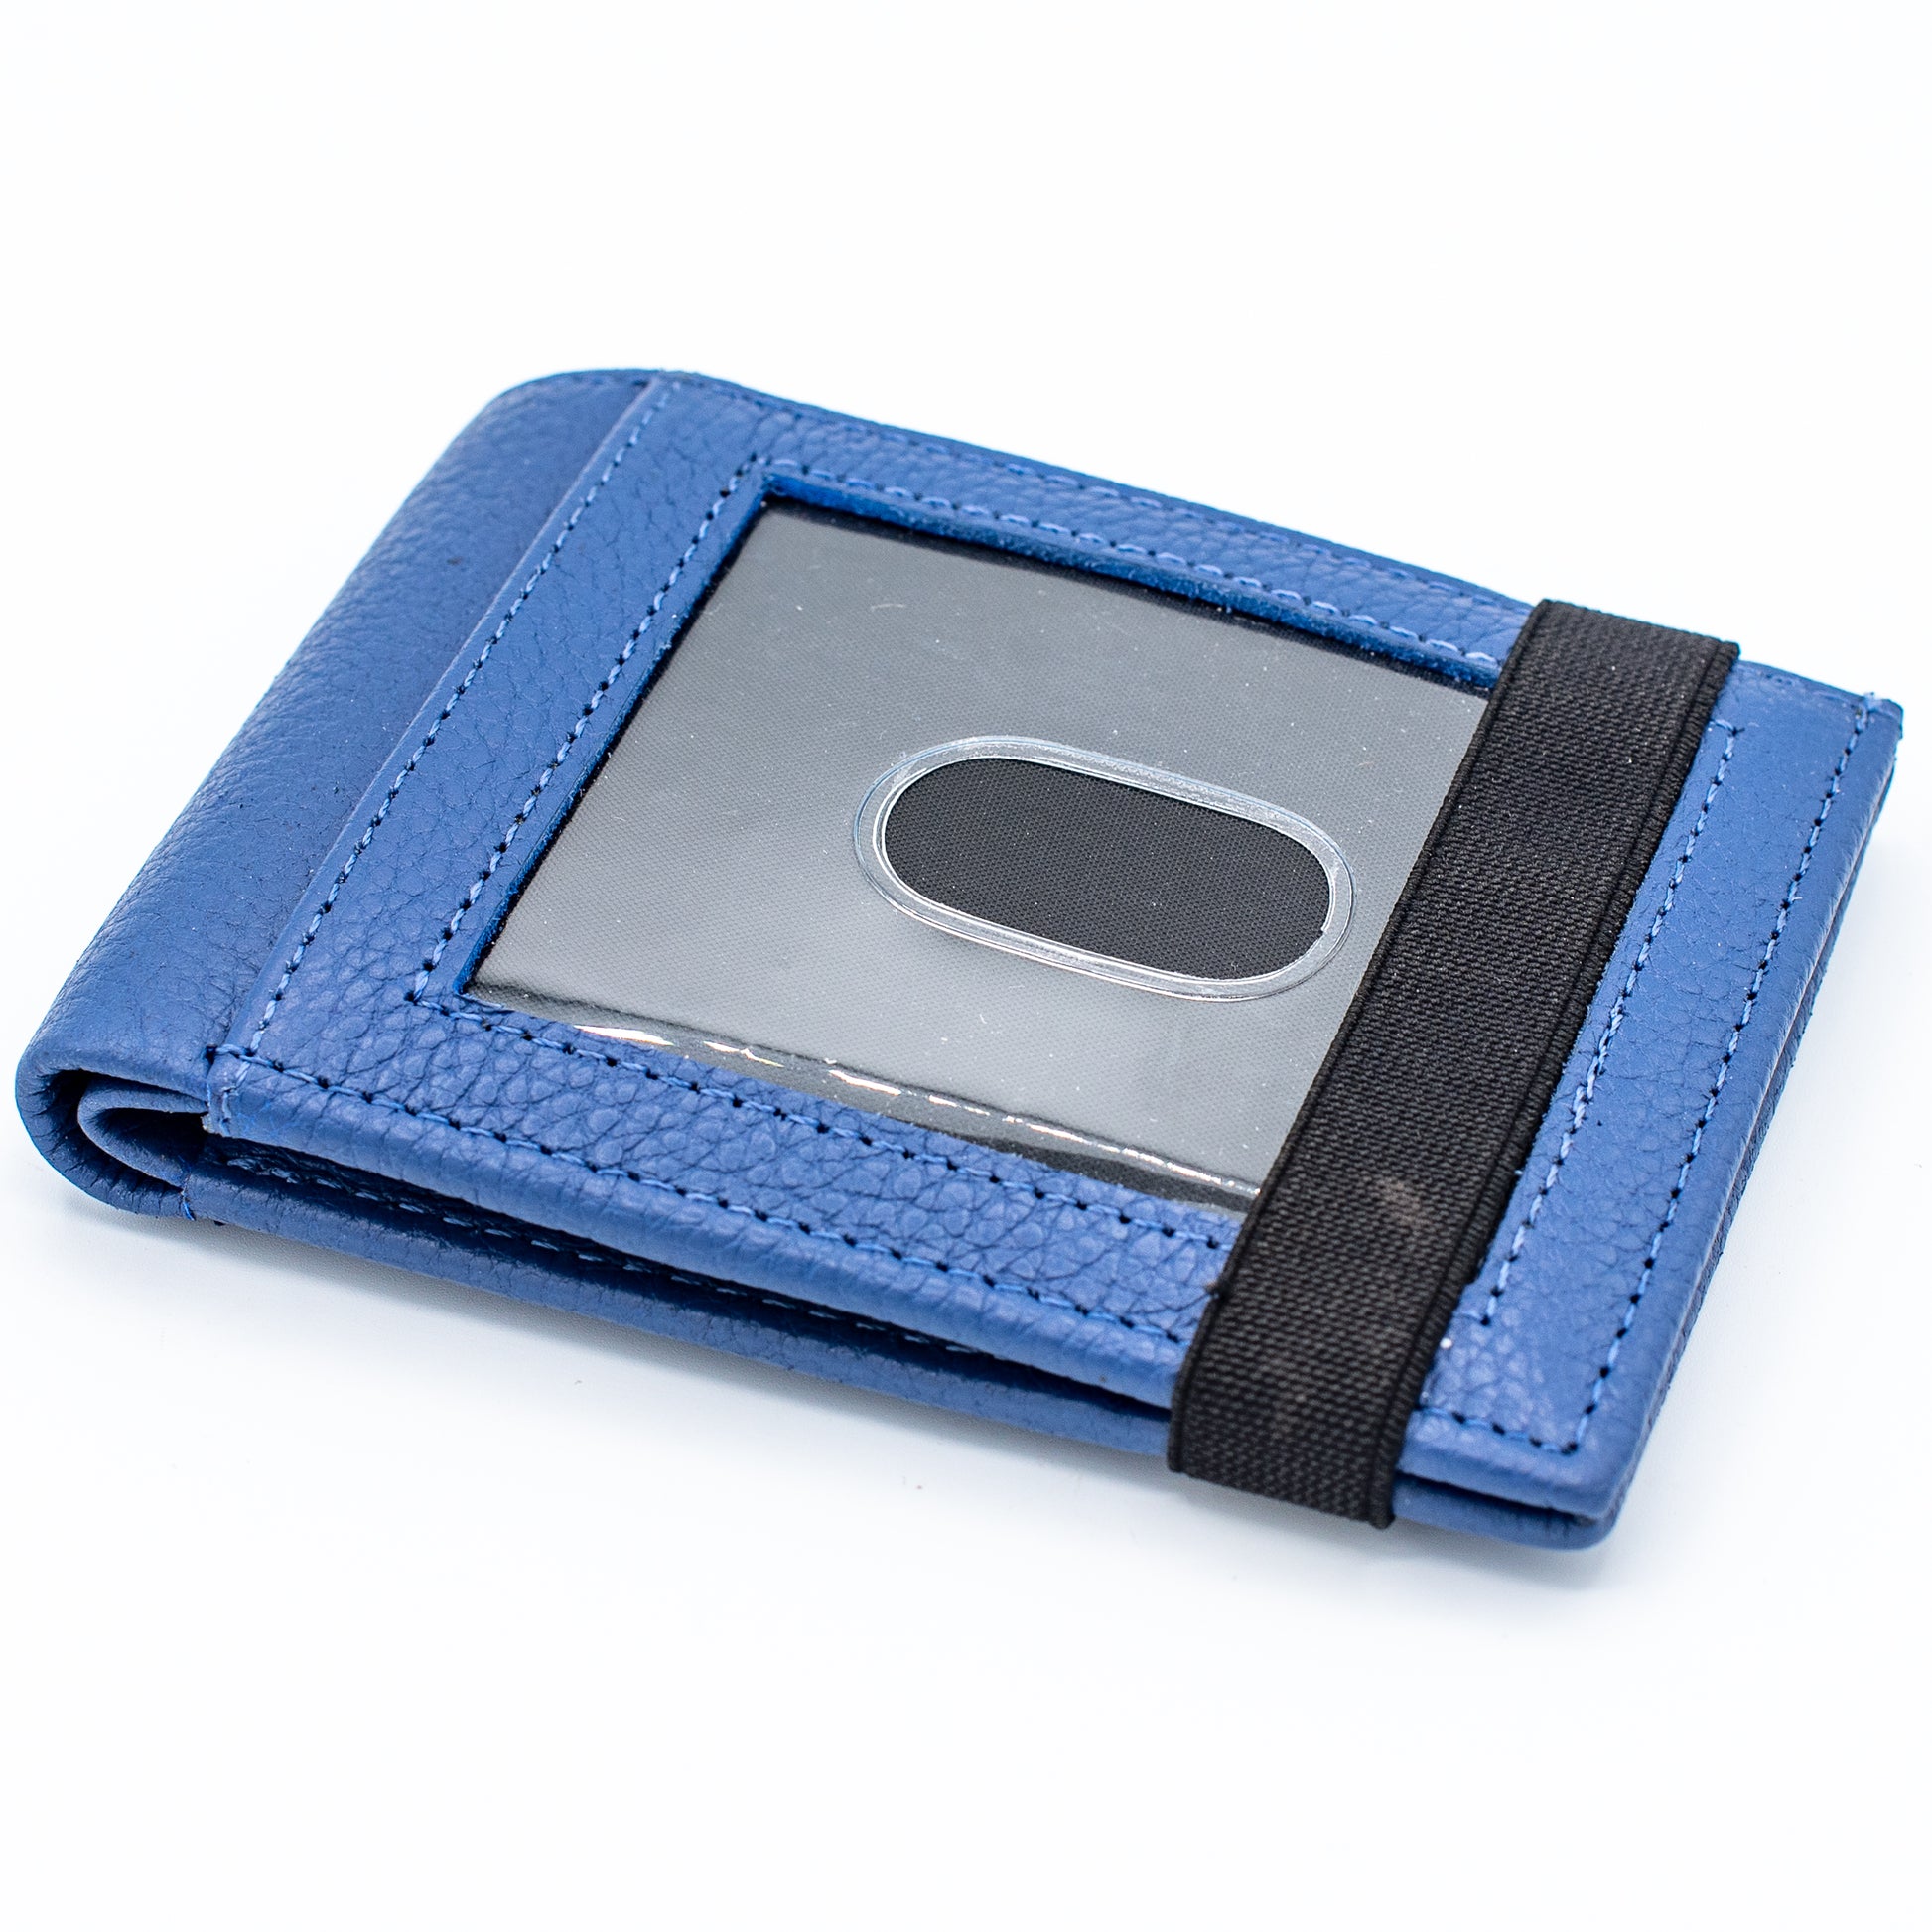 Allen RFID Magnetic Front Pocket Wallet